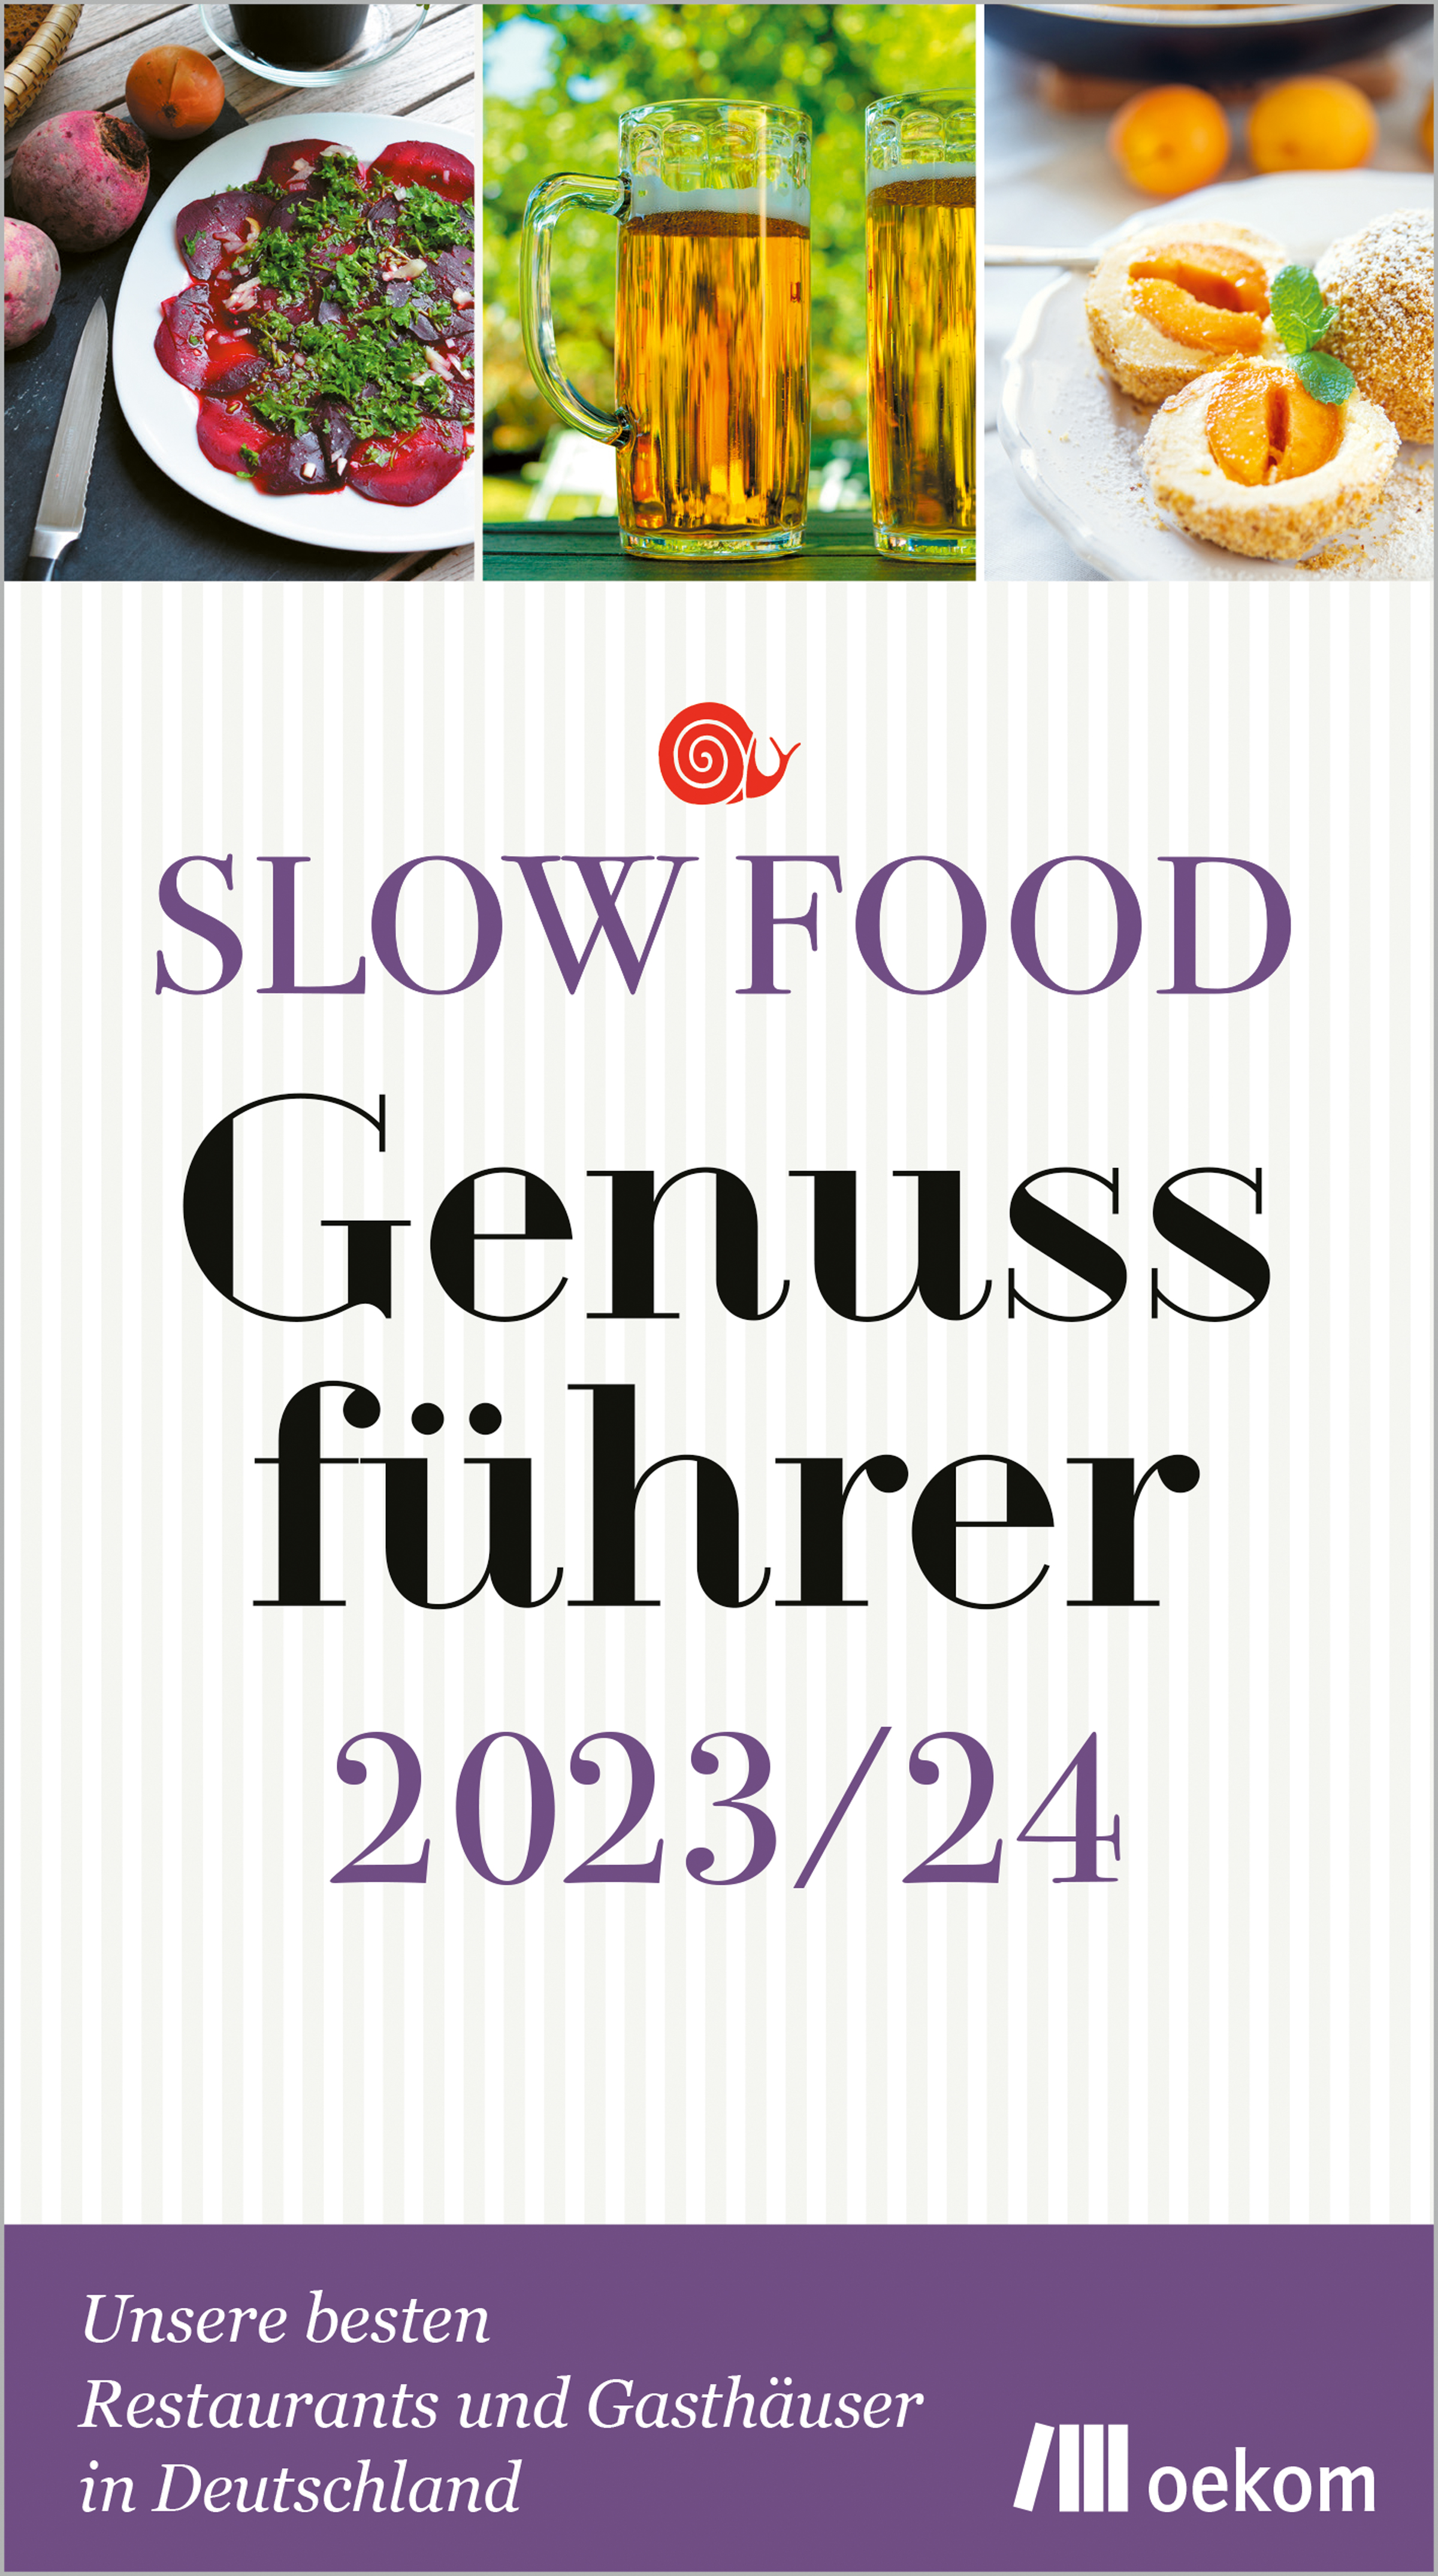 SlowFood_Genussfuehrer_2023-24_rgb_2400Pixbreit.jpg